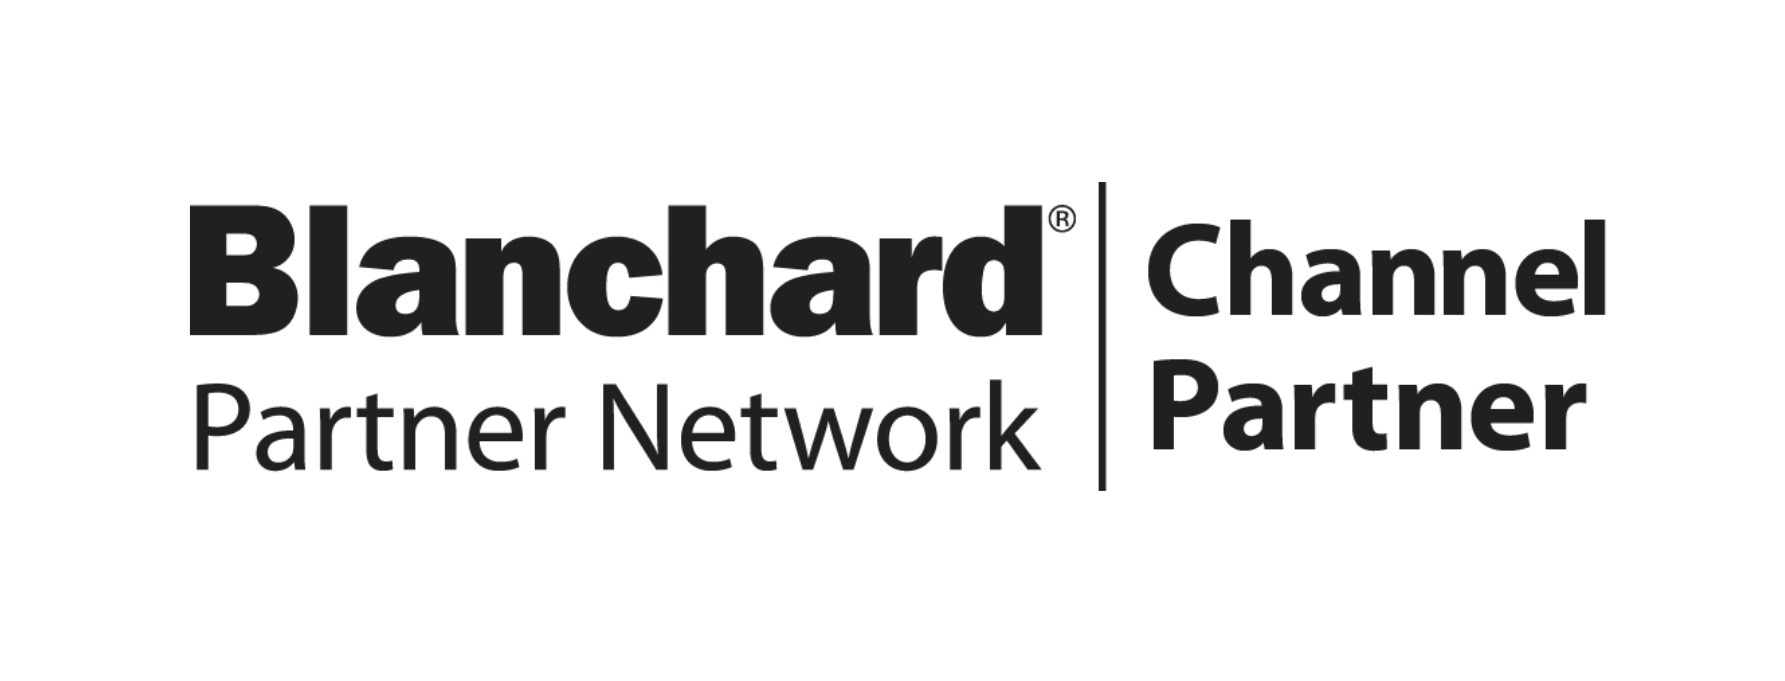 Logo Channel Partner Blanchard per la formazione manageriale